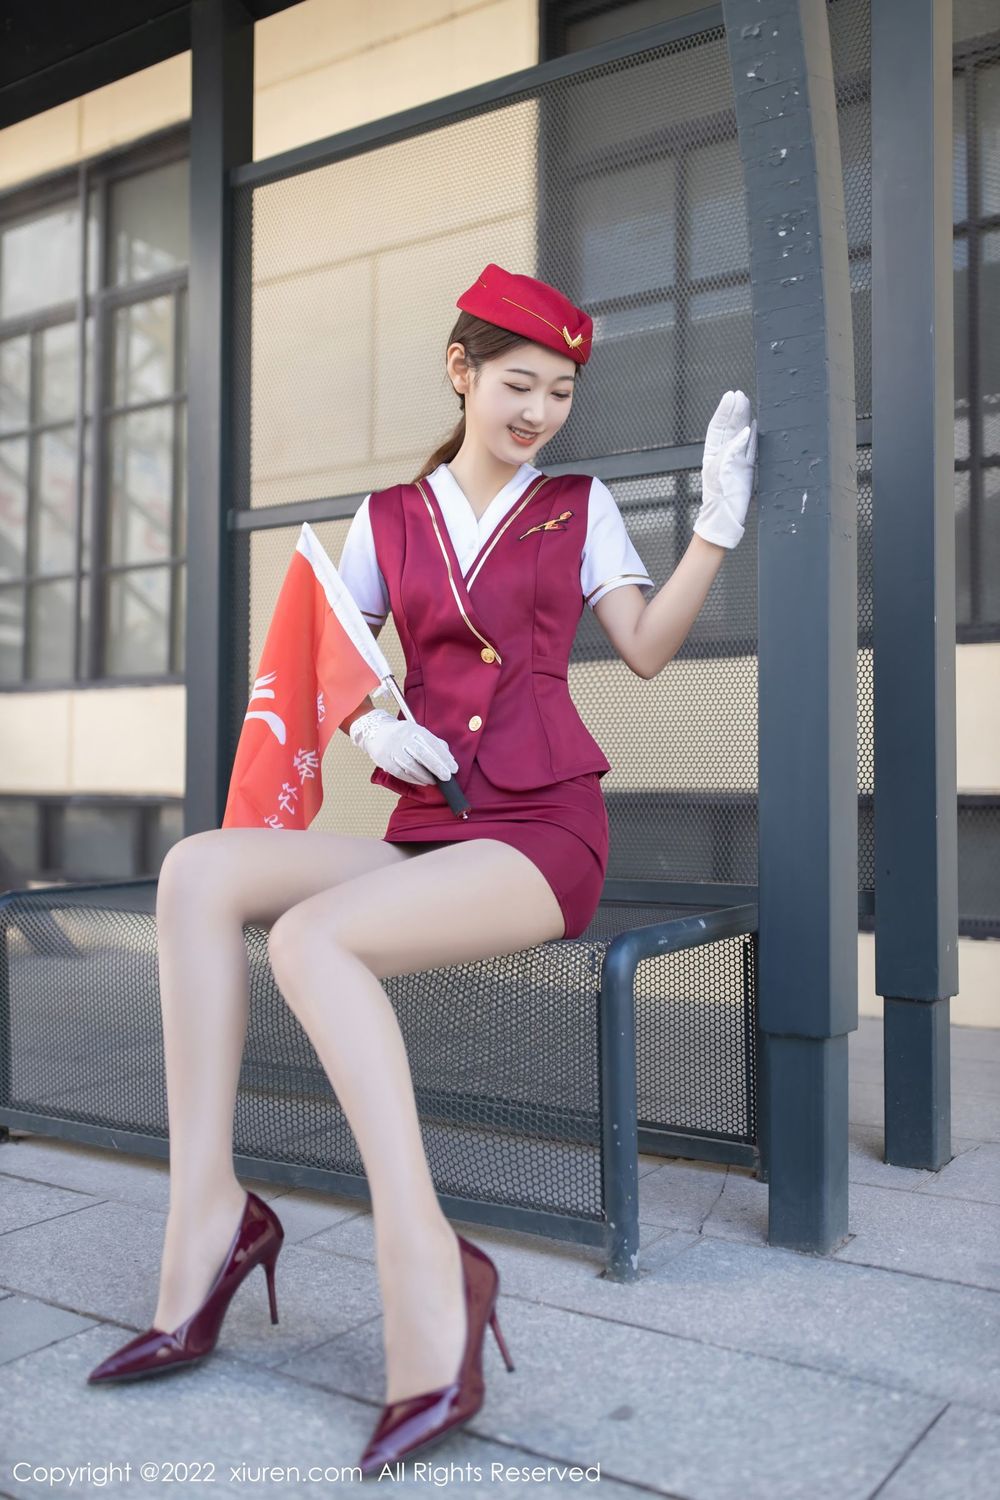 美女模特唐安琪角色扮演旅行社导游红色制服写真